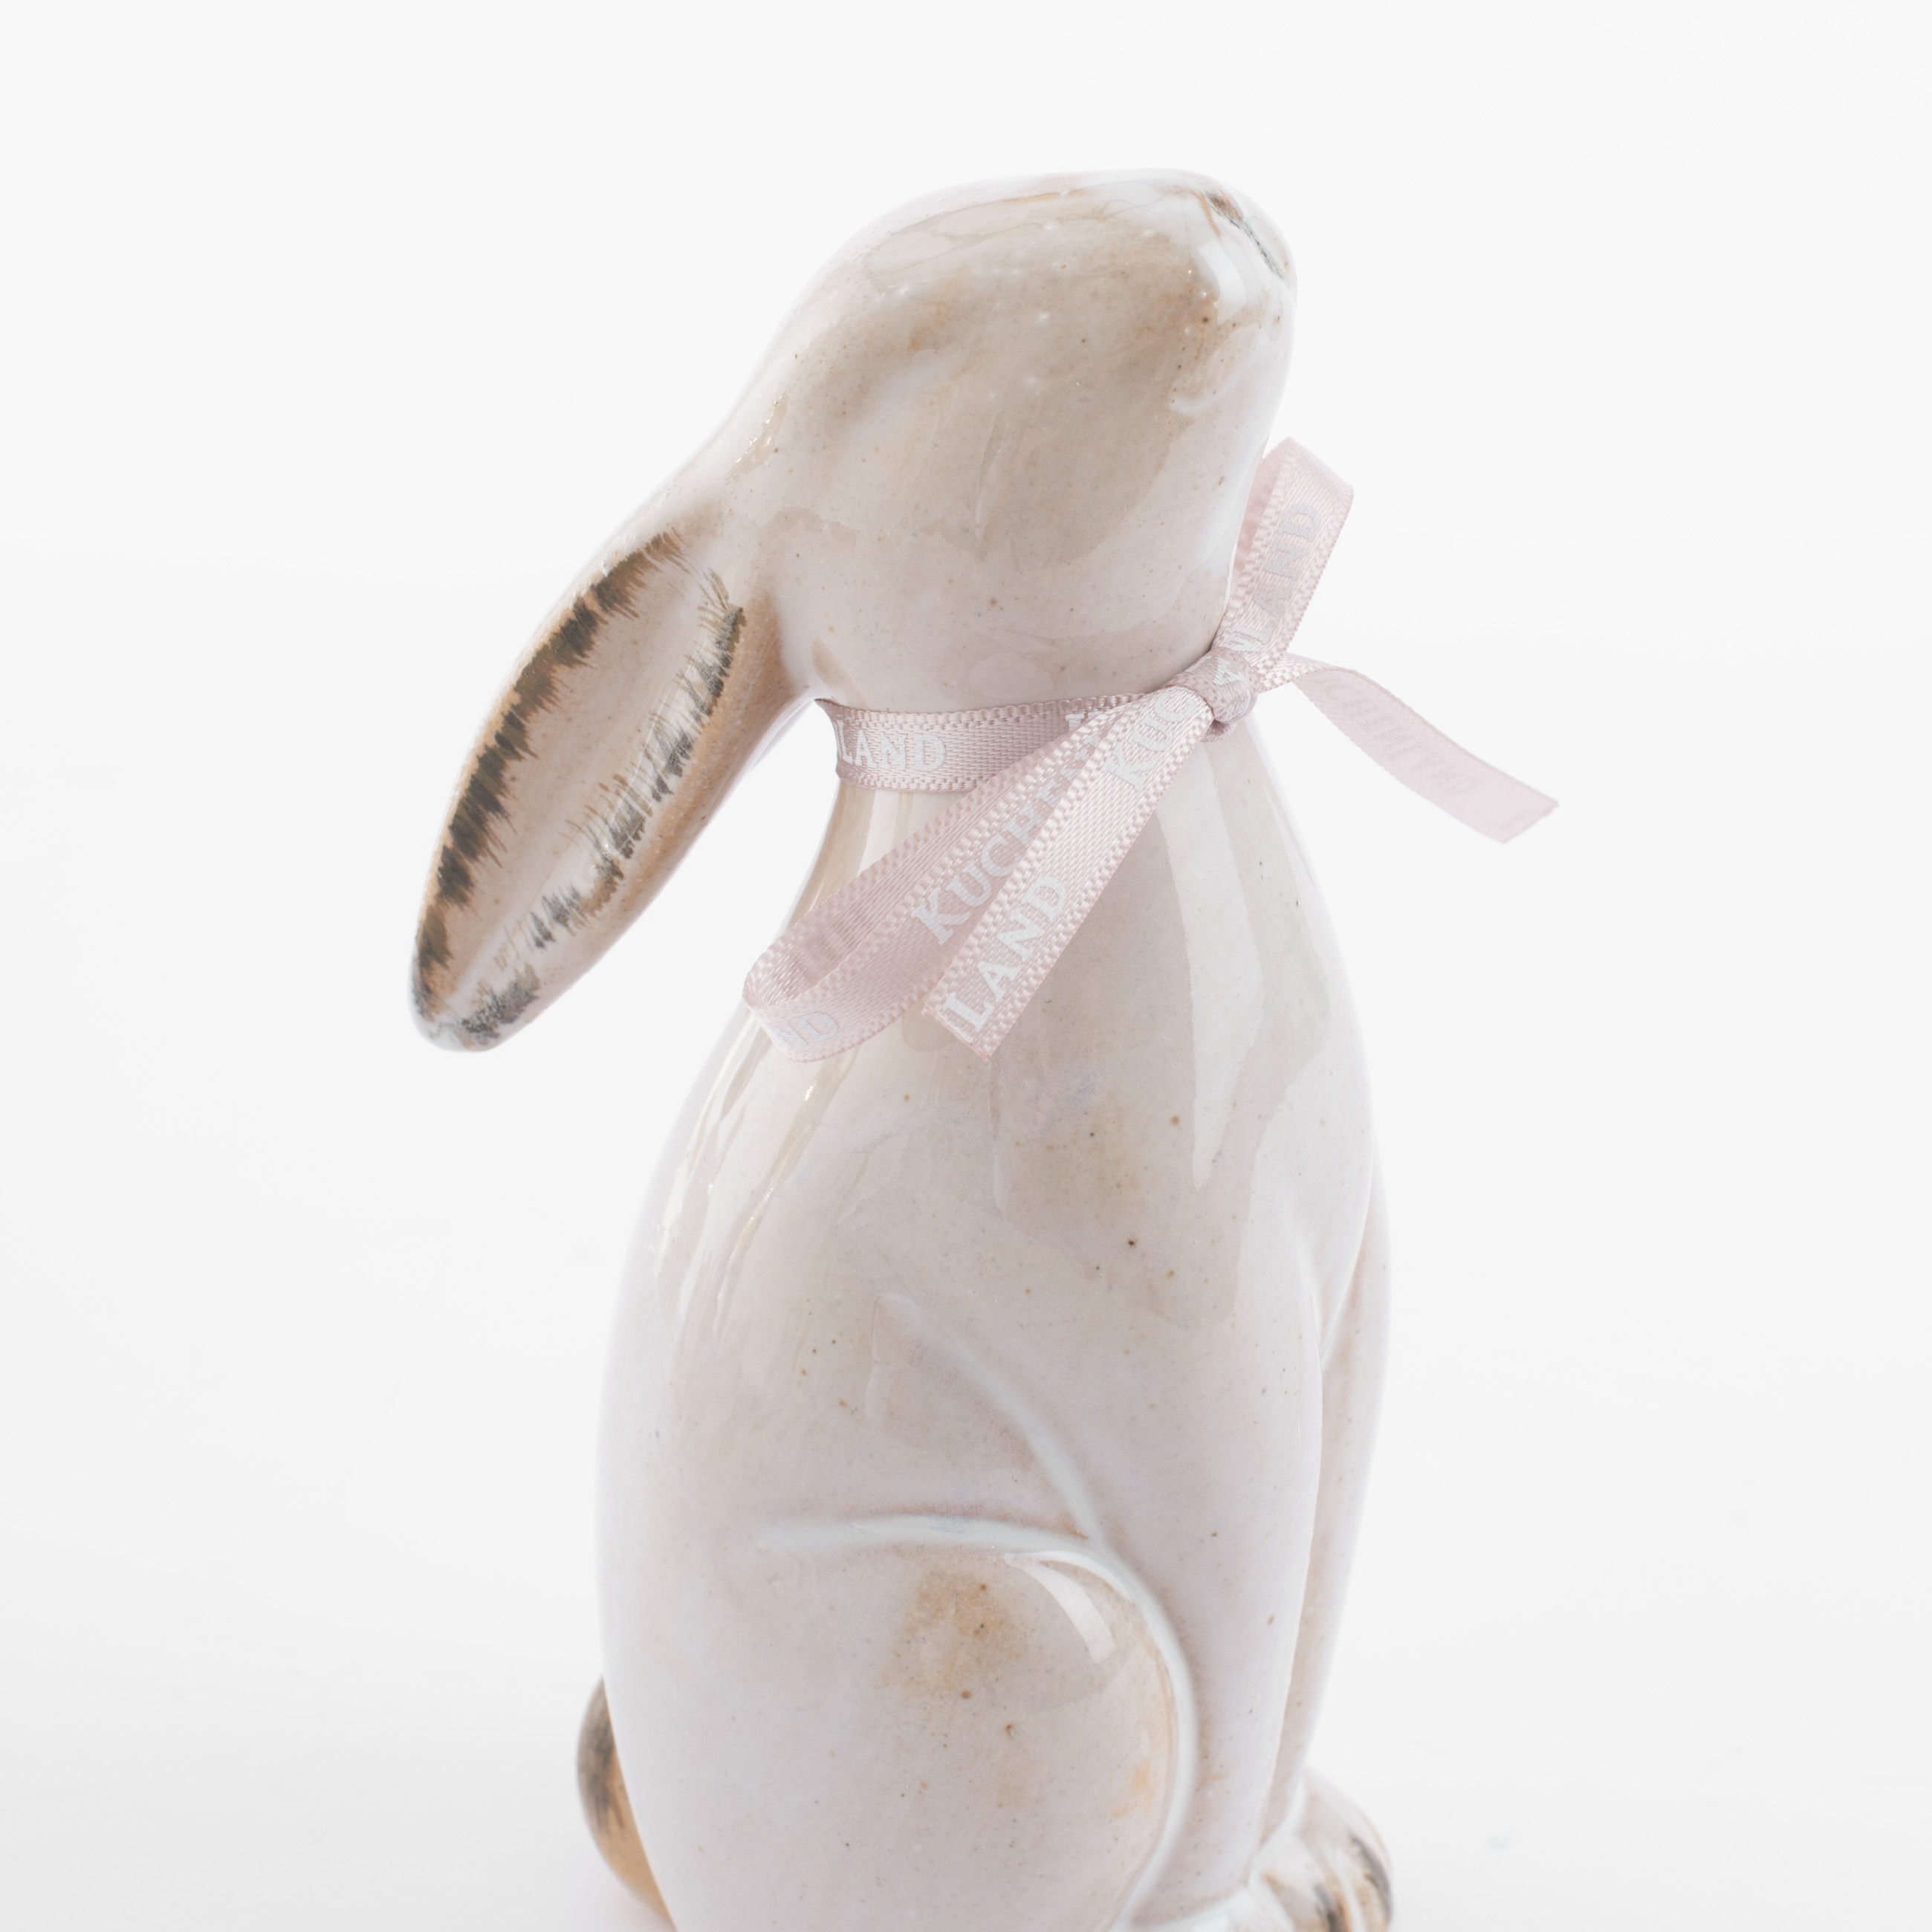 Статуэтка, 14 см, фарфор P, бежевая, Кролик сидит, Natural Easter изображение № 5